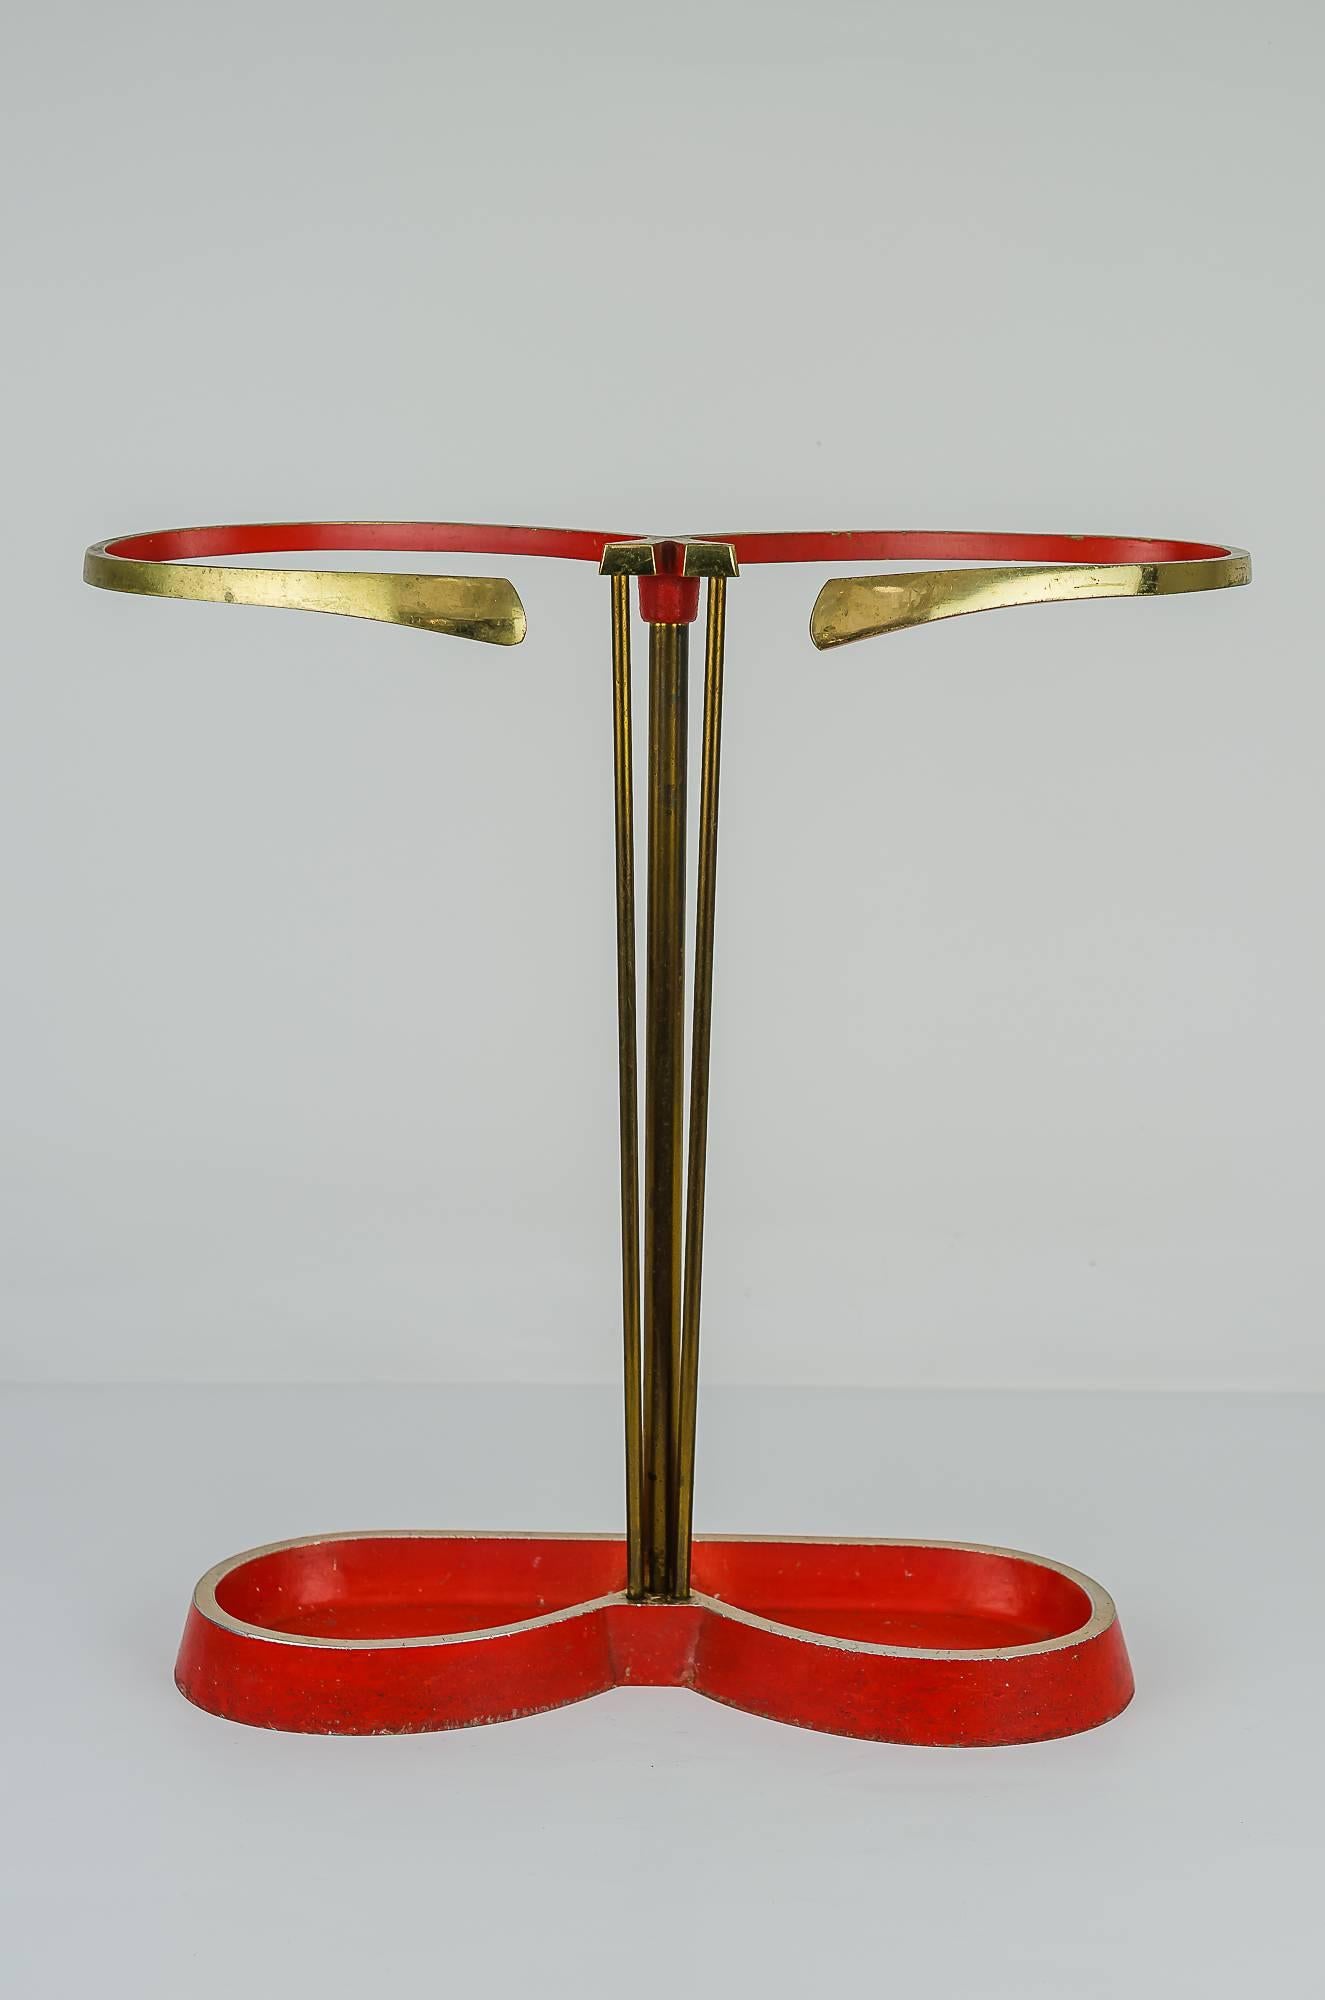 Midcentury, Austrian umbrella stand, red, circa 1950s
Good original condition.